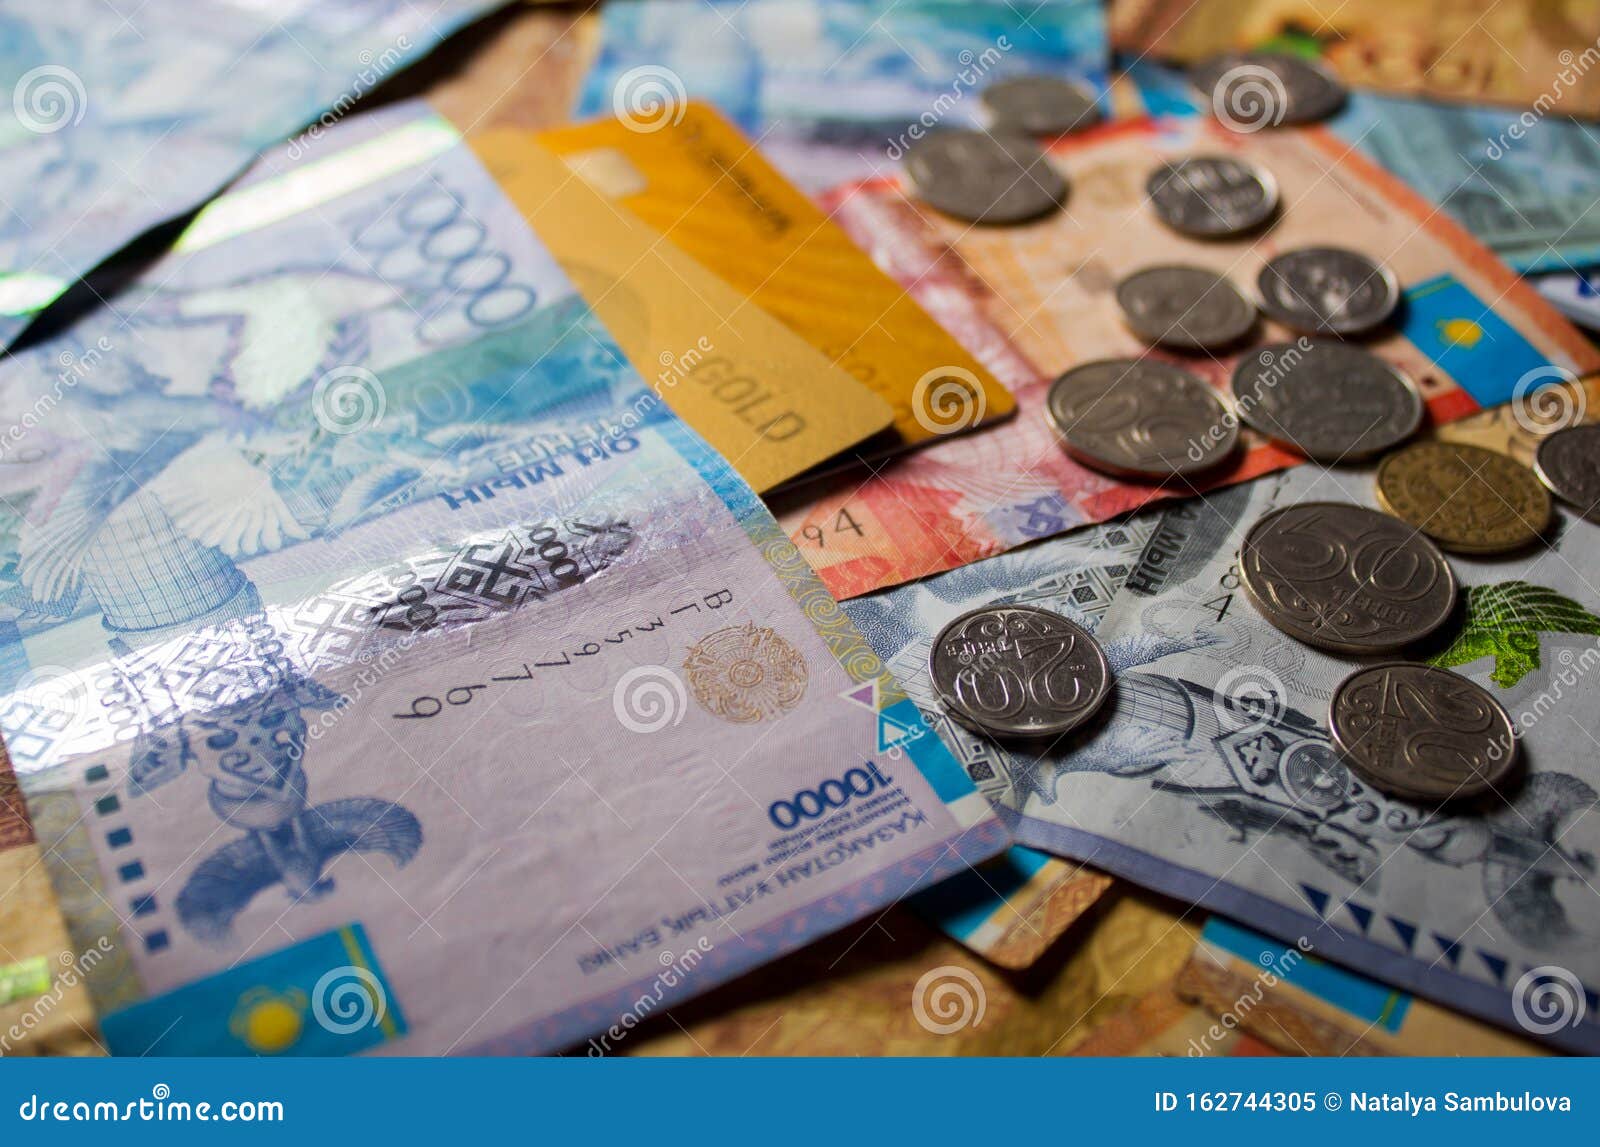 Valuta kz курсы обмена валюты в msi 1080 разгон майнинг